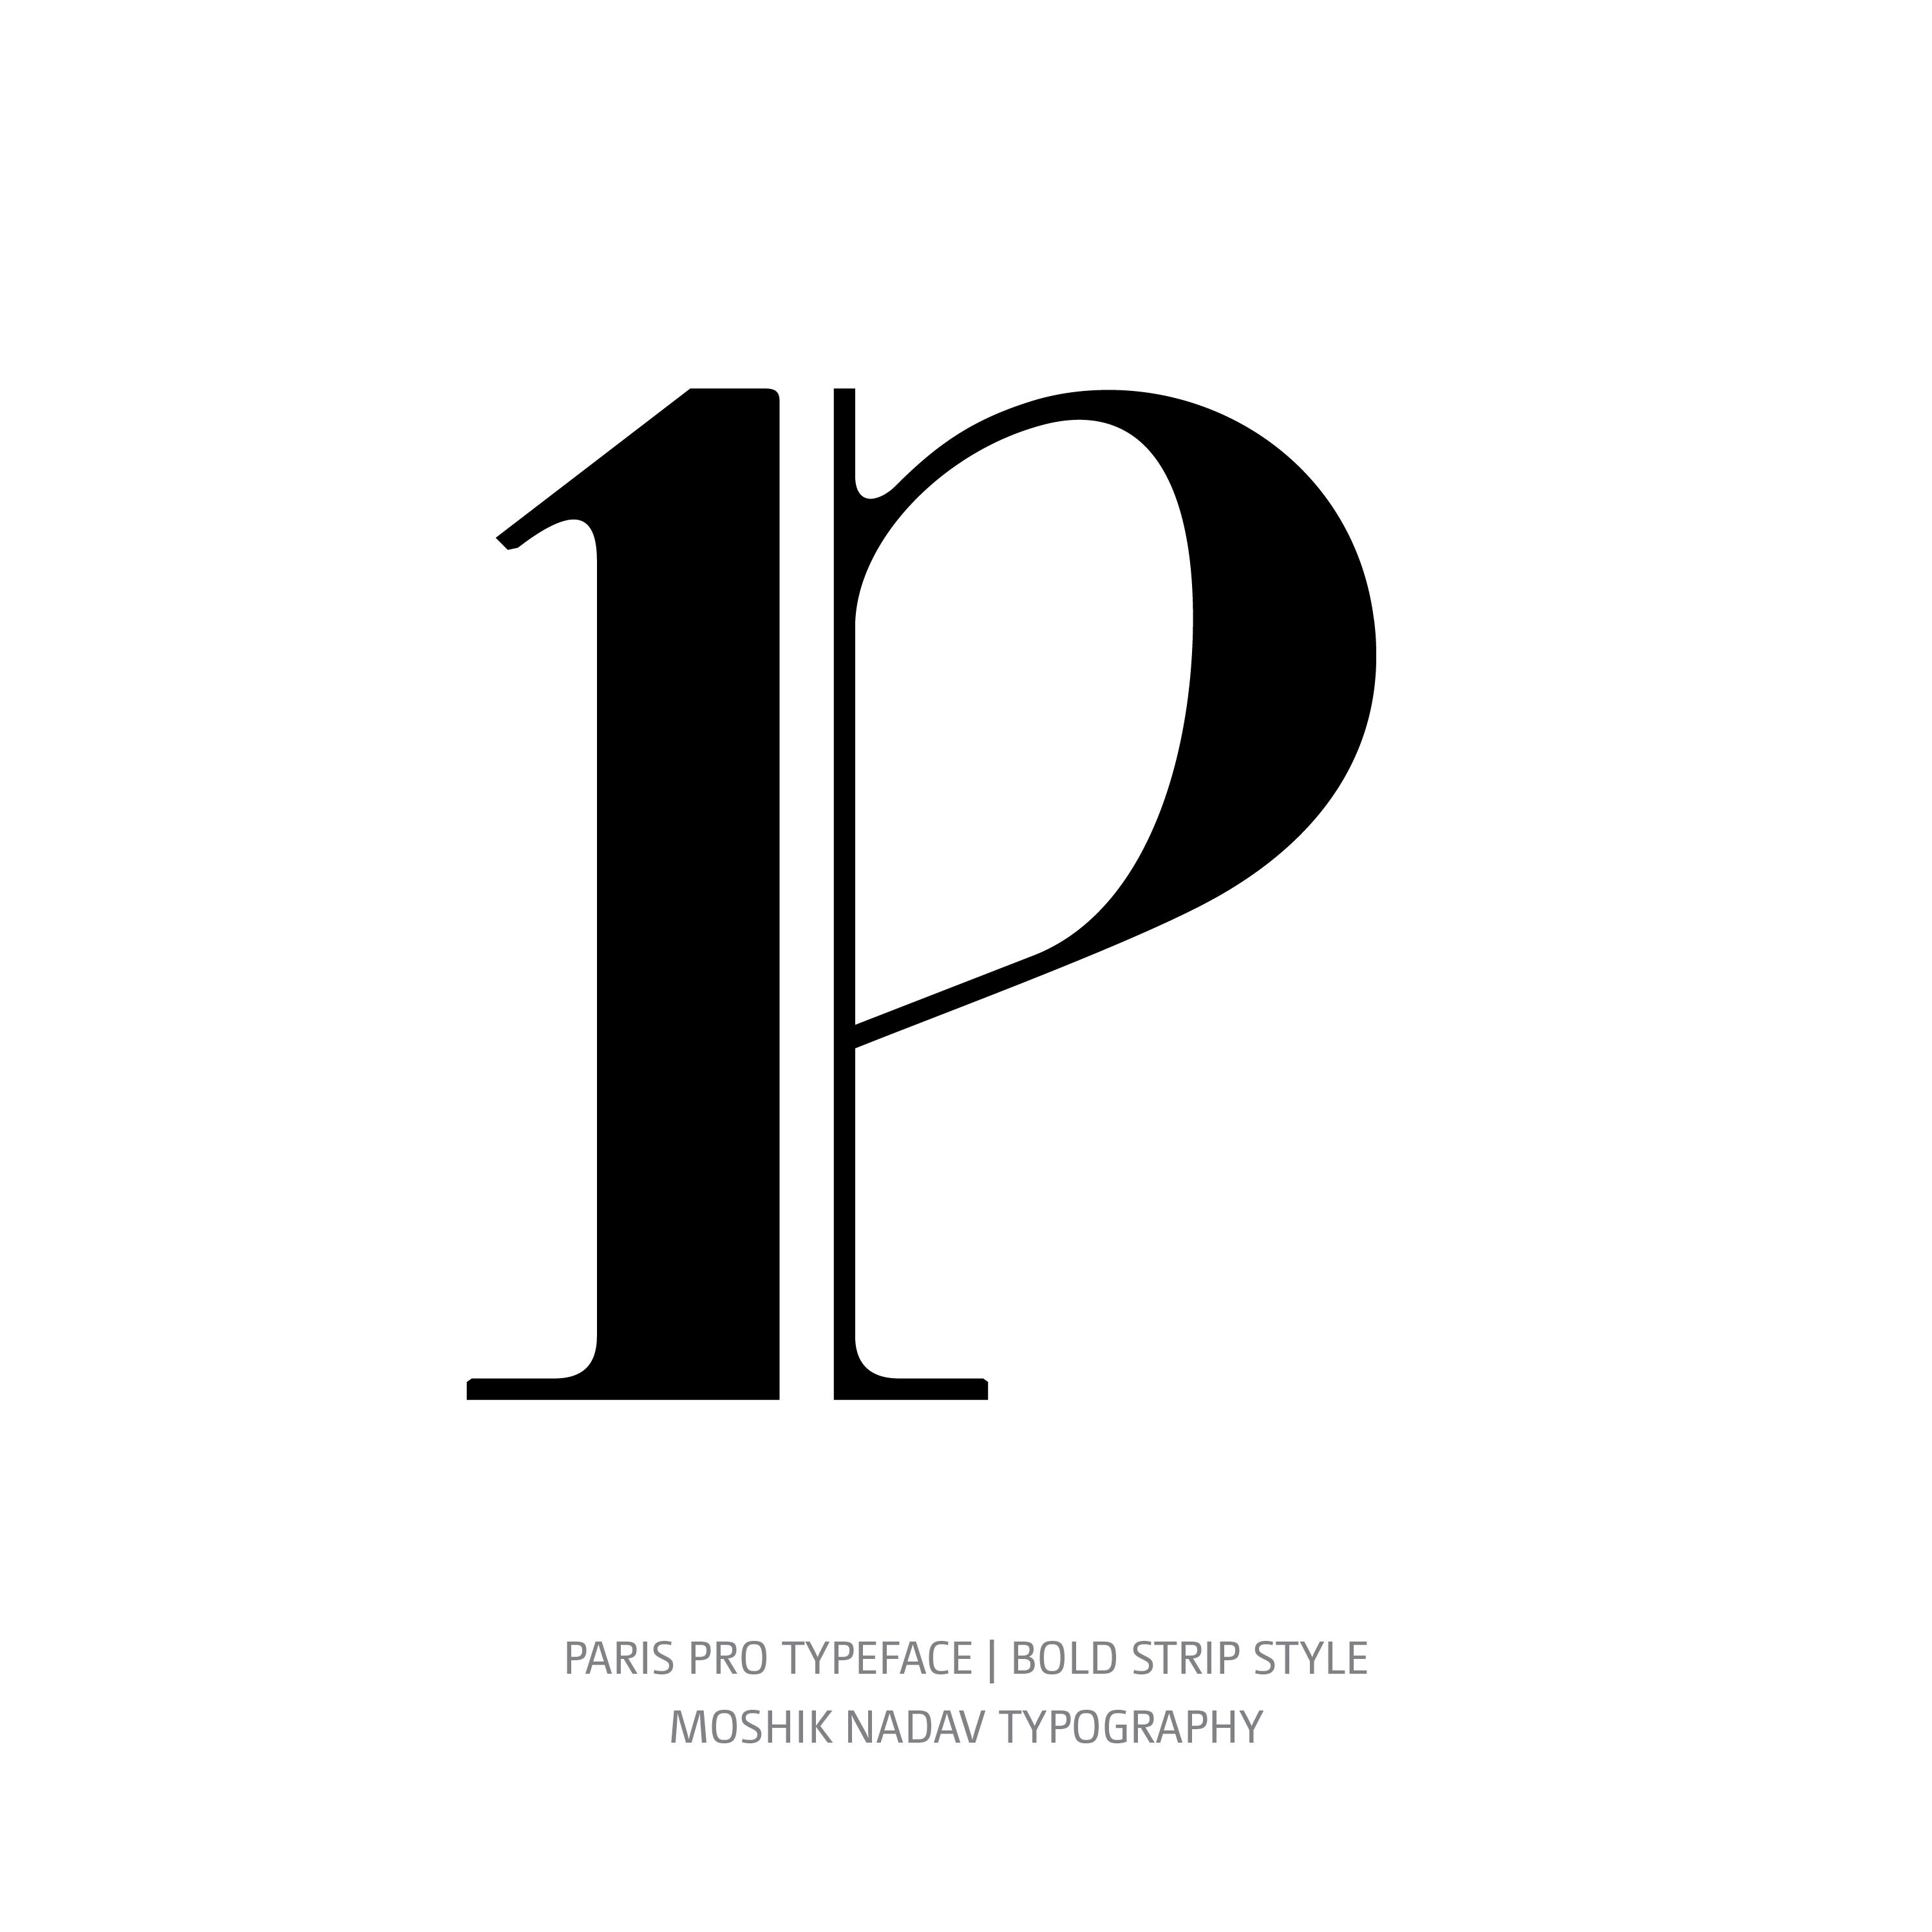 Paris Pro Typeface Bold Strip p